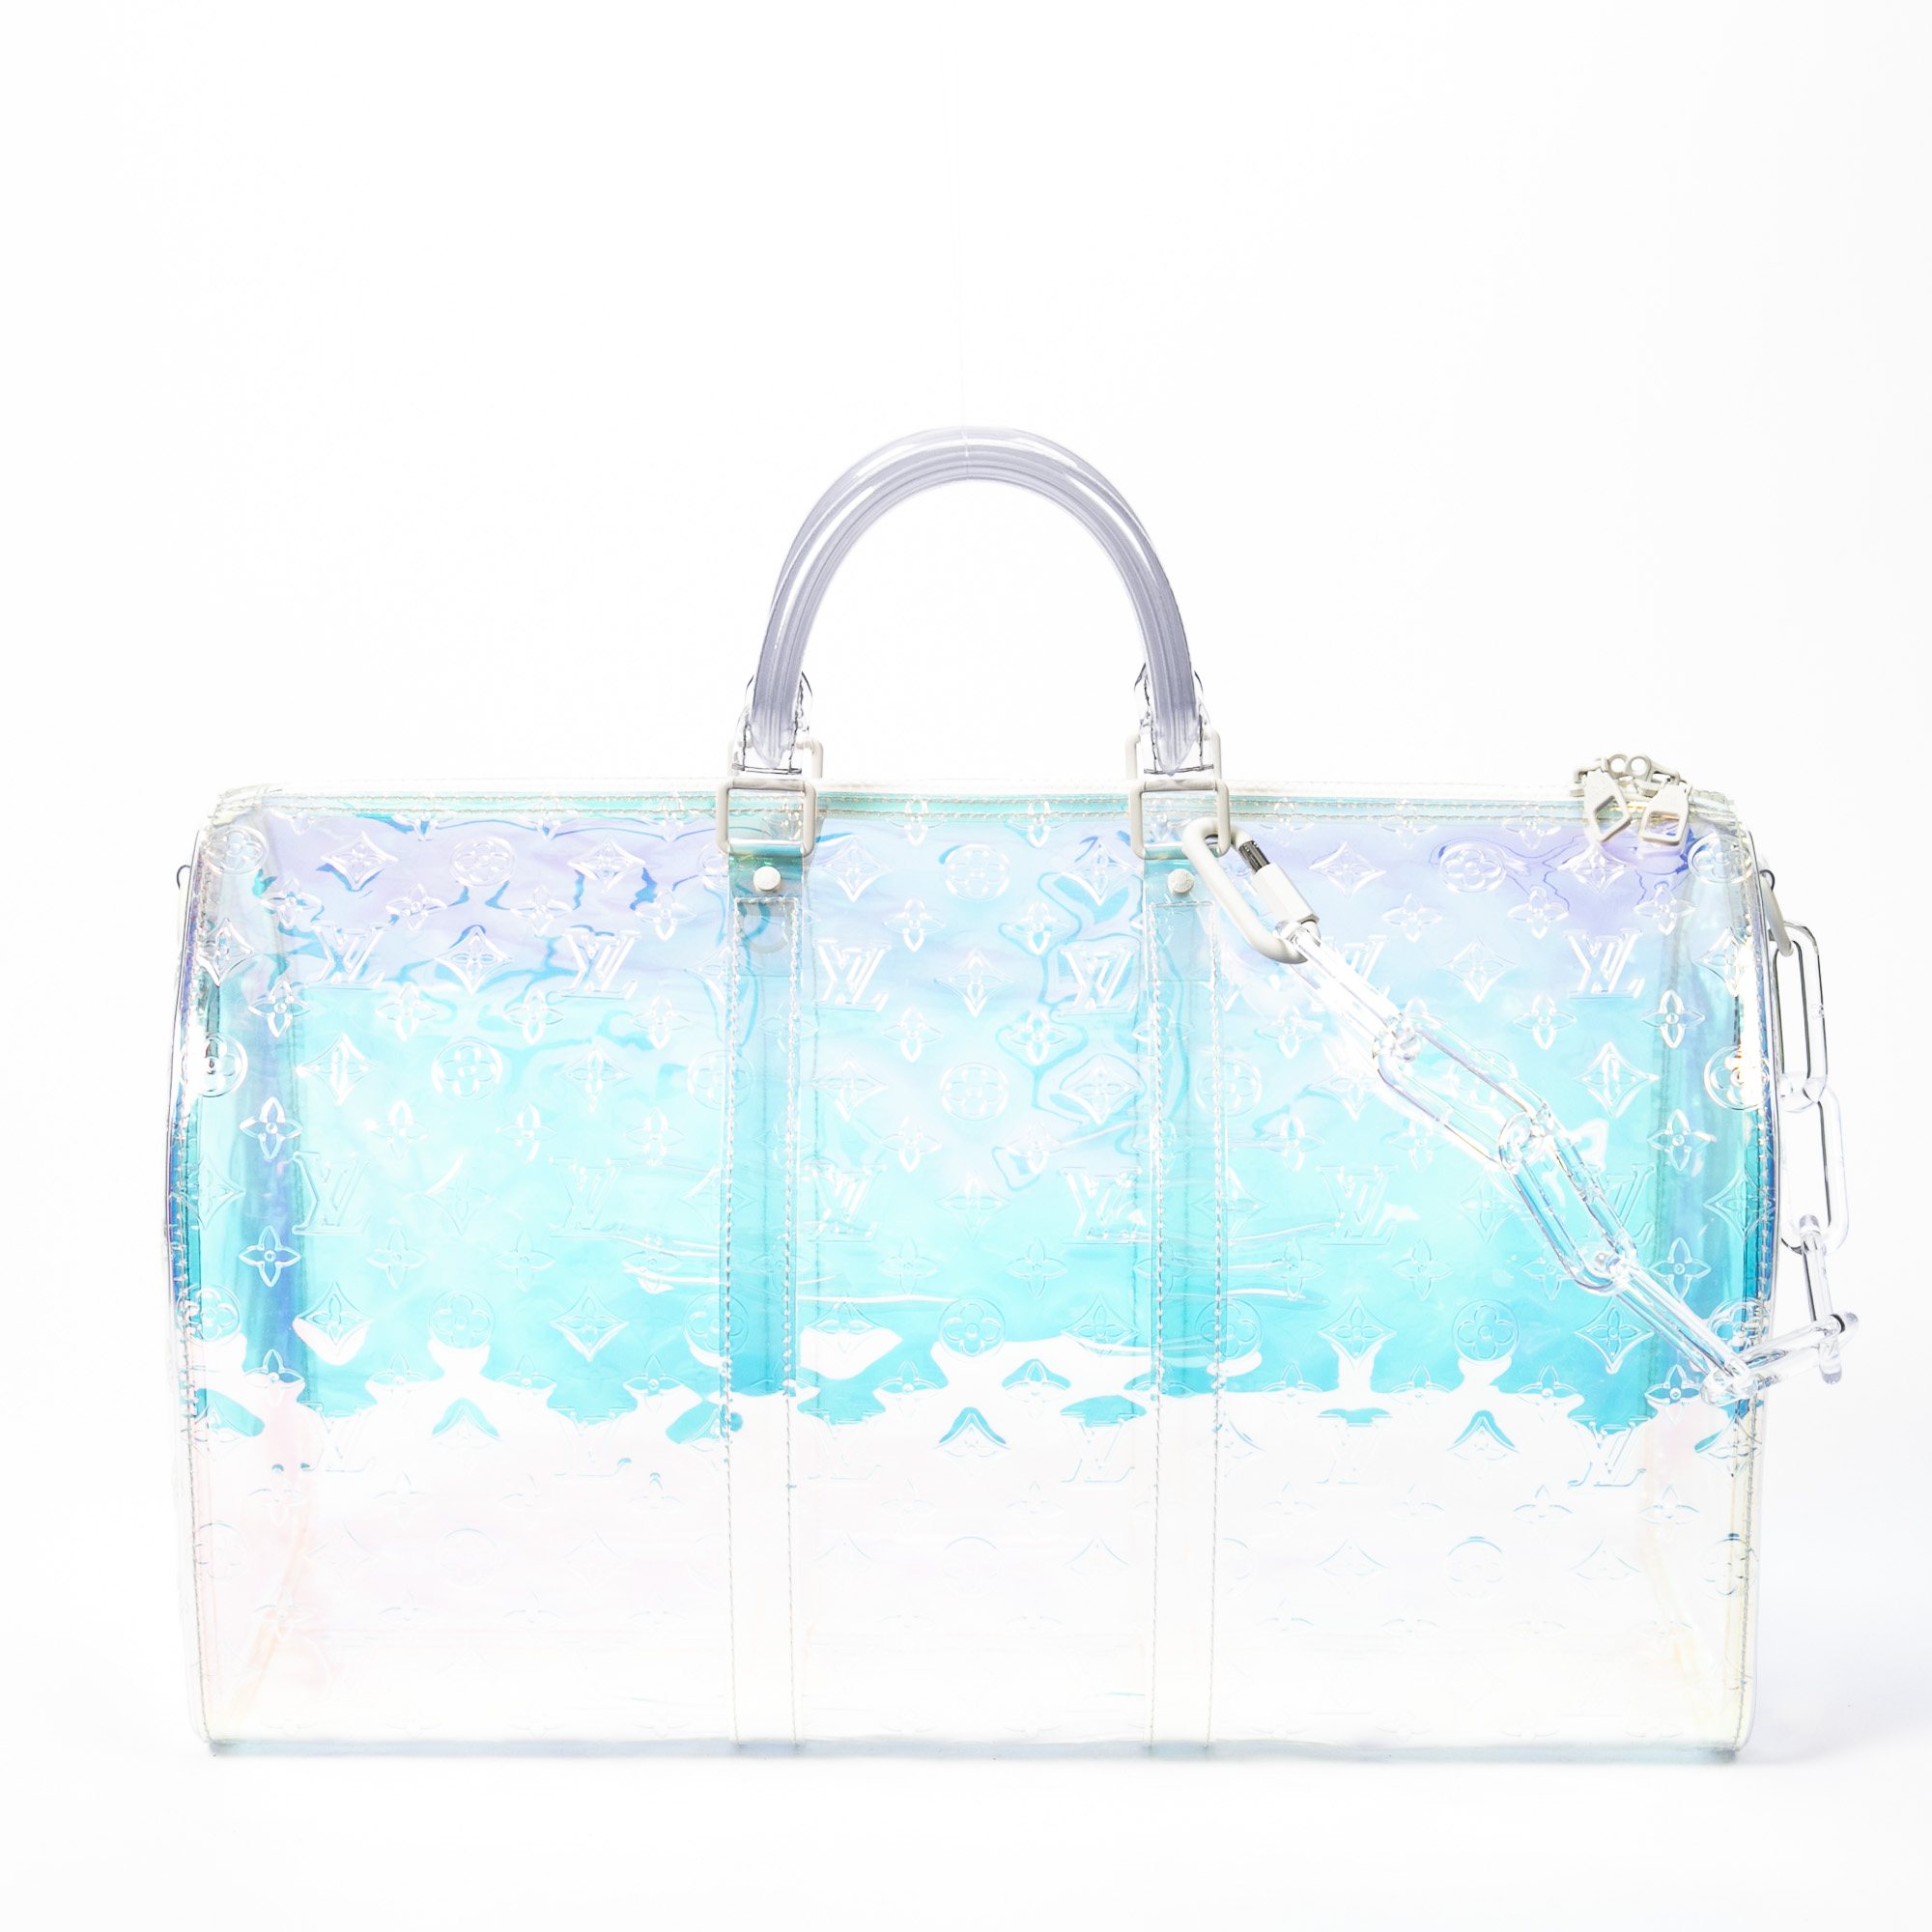 Louis Vuitton, Bags, Louis Vuitton Keepall Bandouliere Bag Limited  Edition Monogram Prism Pvc 5